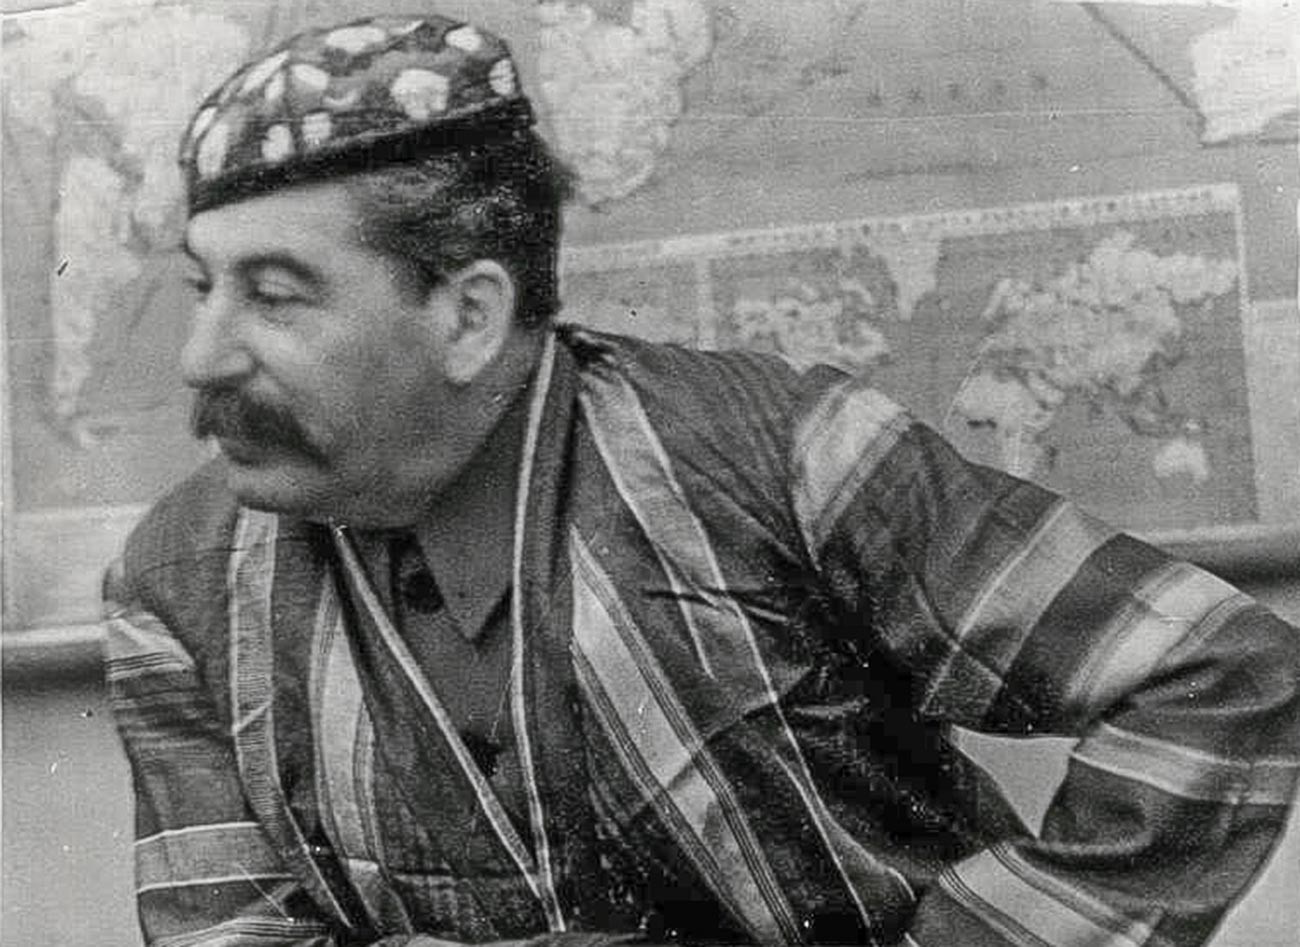 Iósif Stalin con ropas nacionales uzbekas, década de 1930
